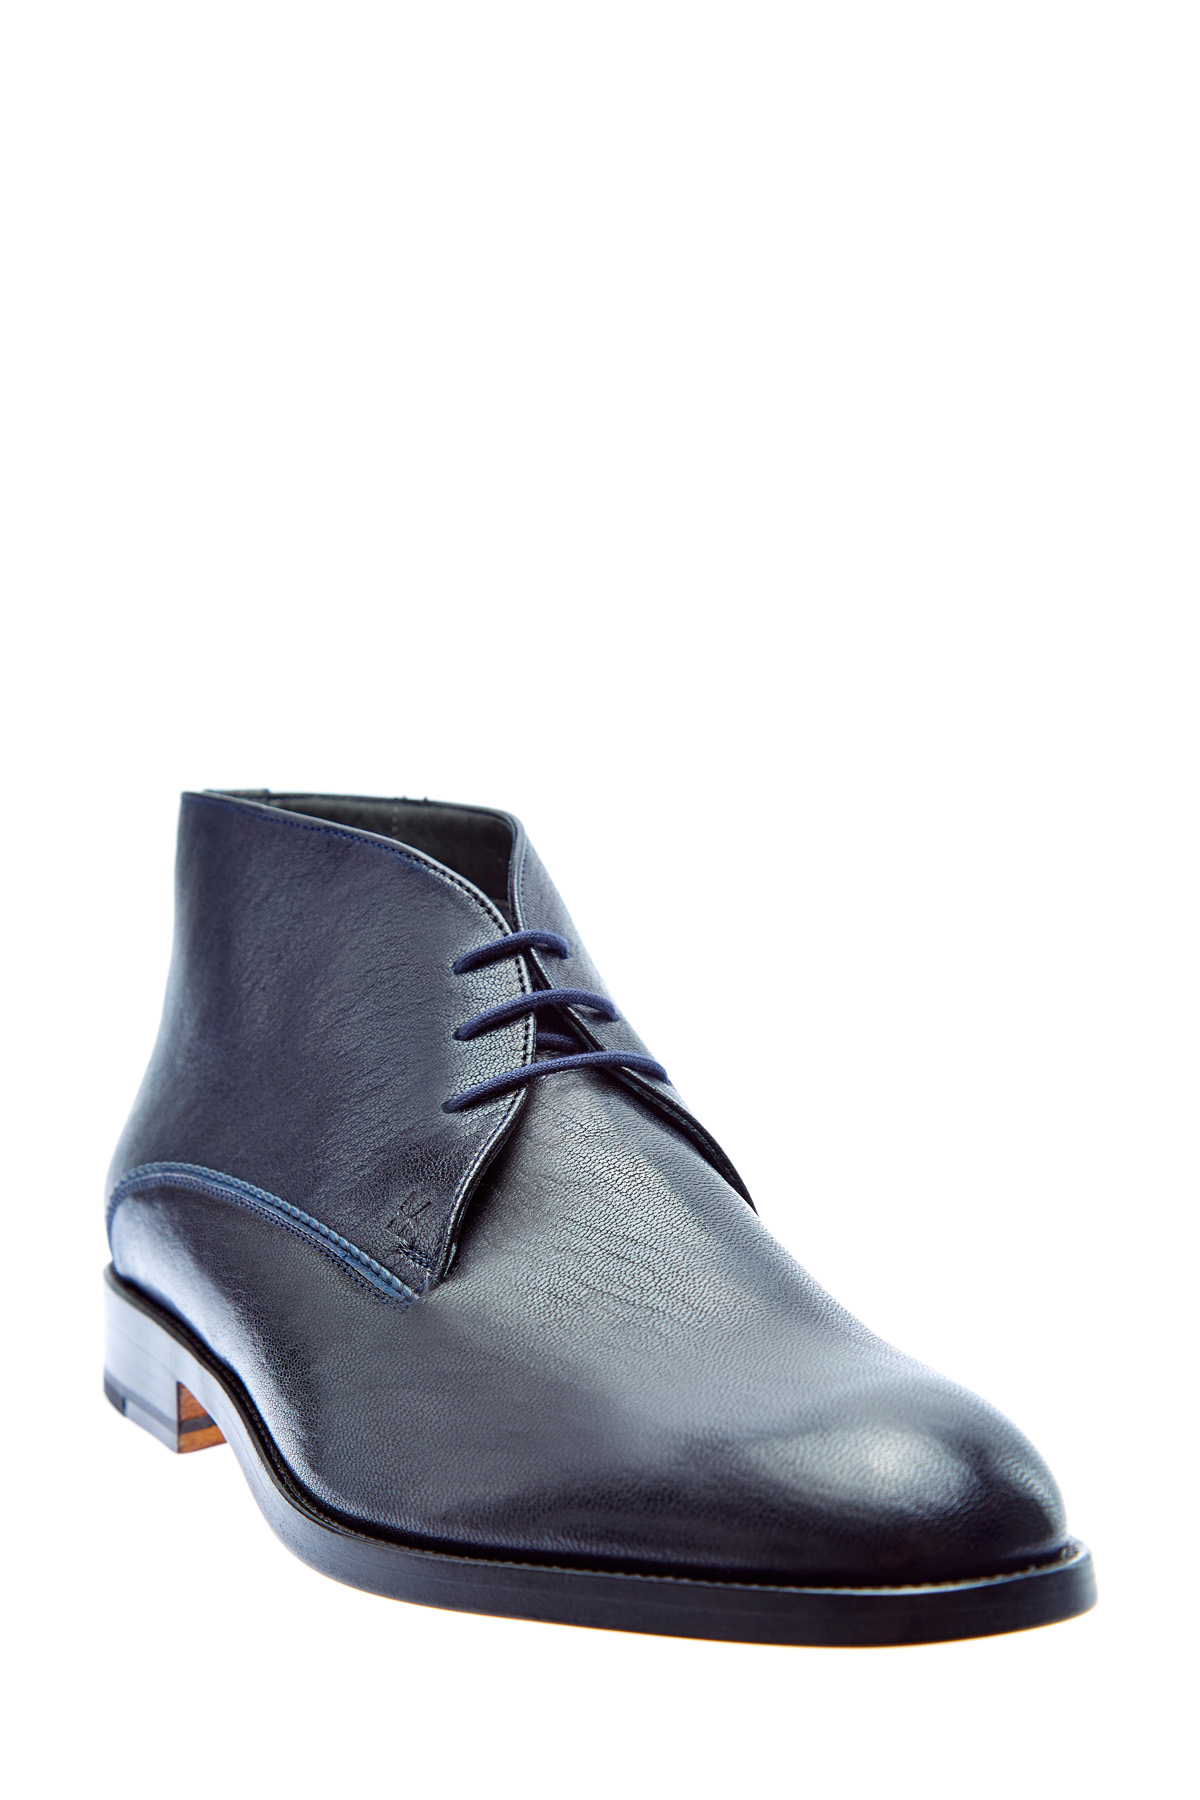 Окрашенные вручную ботинки из кожи MORESCHI, цвет синий, размер 41;41.5;42;43;44;44.5 - фото 3